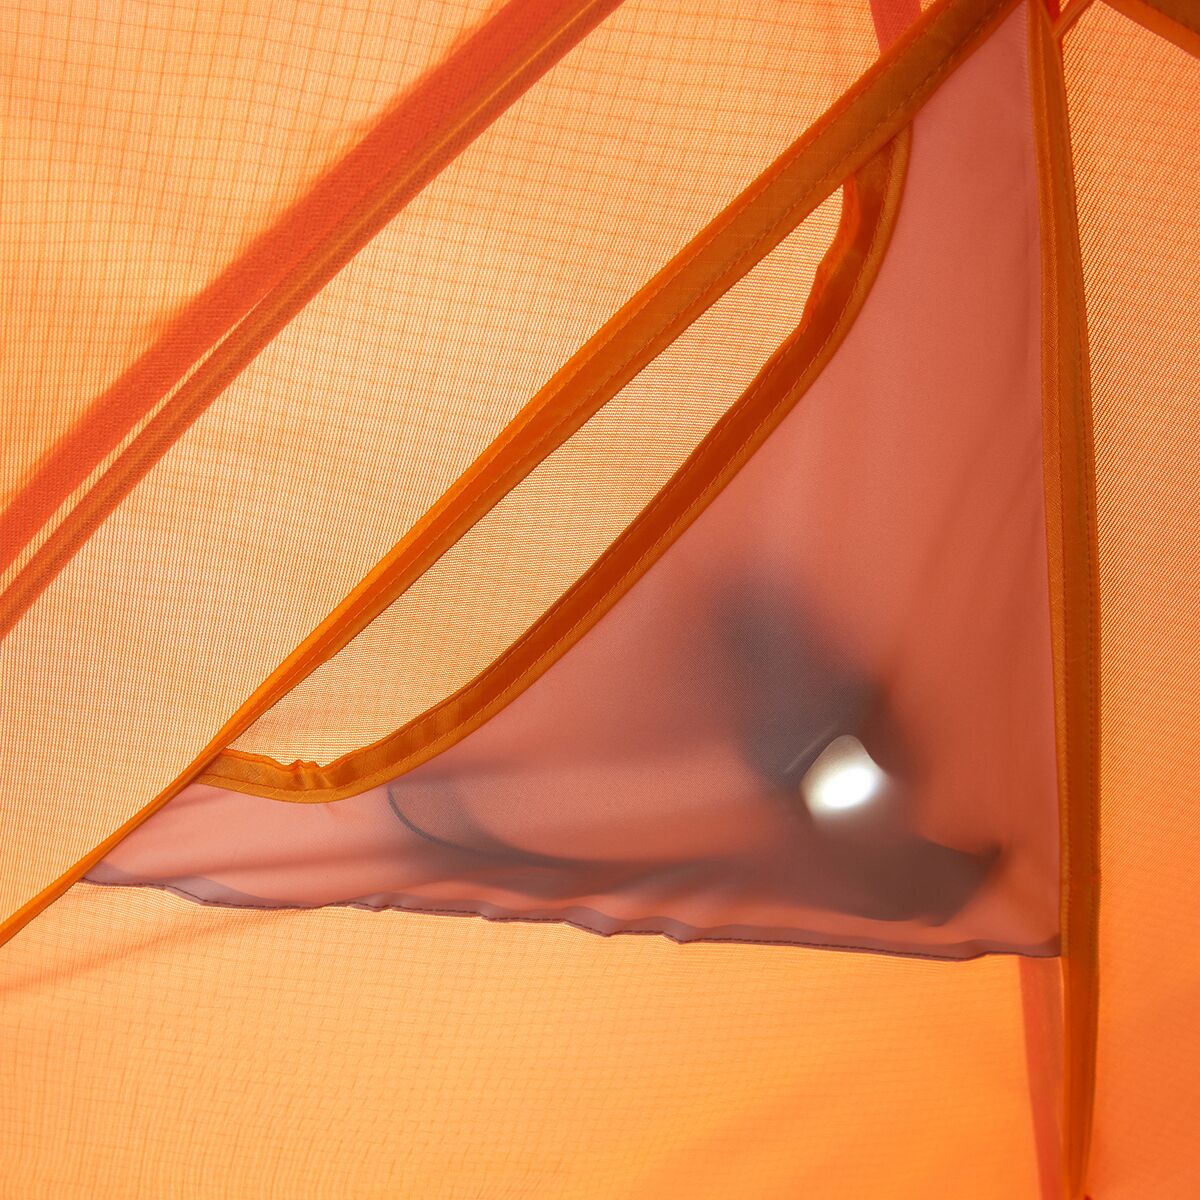 마모트 Marmot Tungsten Tent: 3-Person 3-Season - Hike & Camp